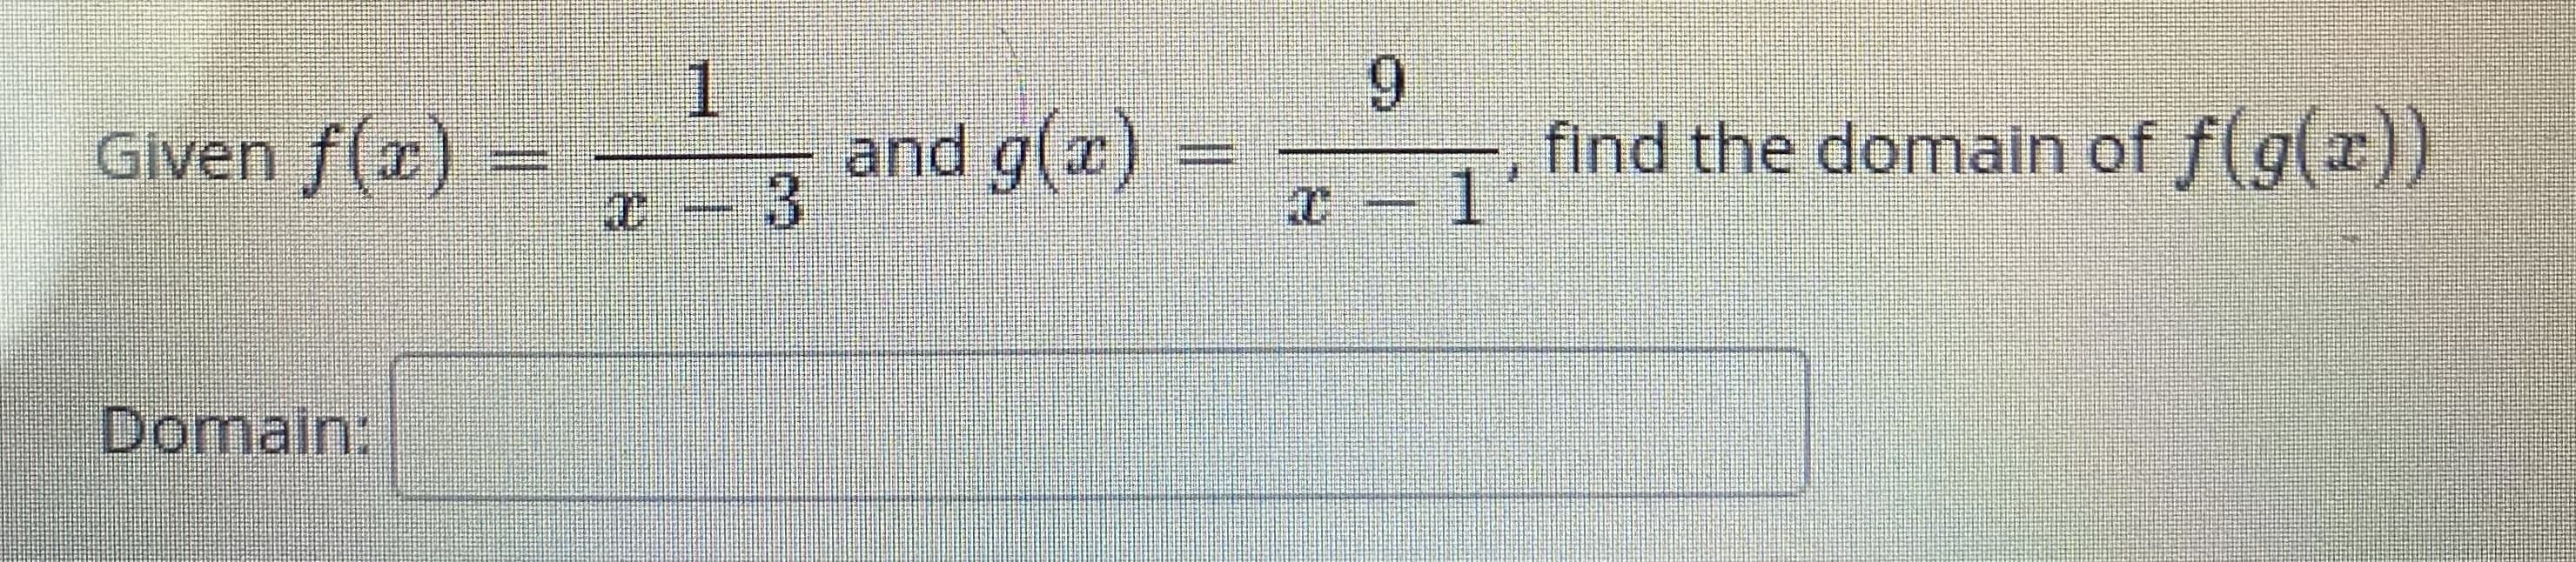 Given f(x)
1.
and g(x)
9.
find the domain of f(g(x))
ひ13
